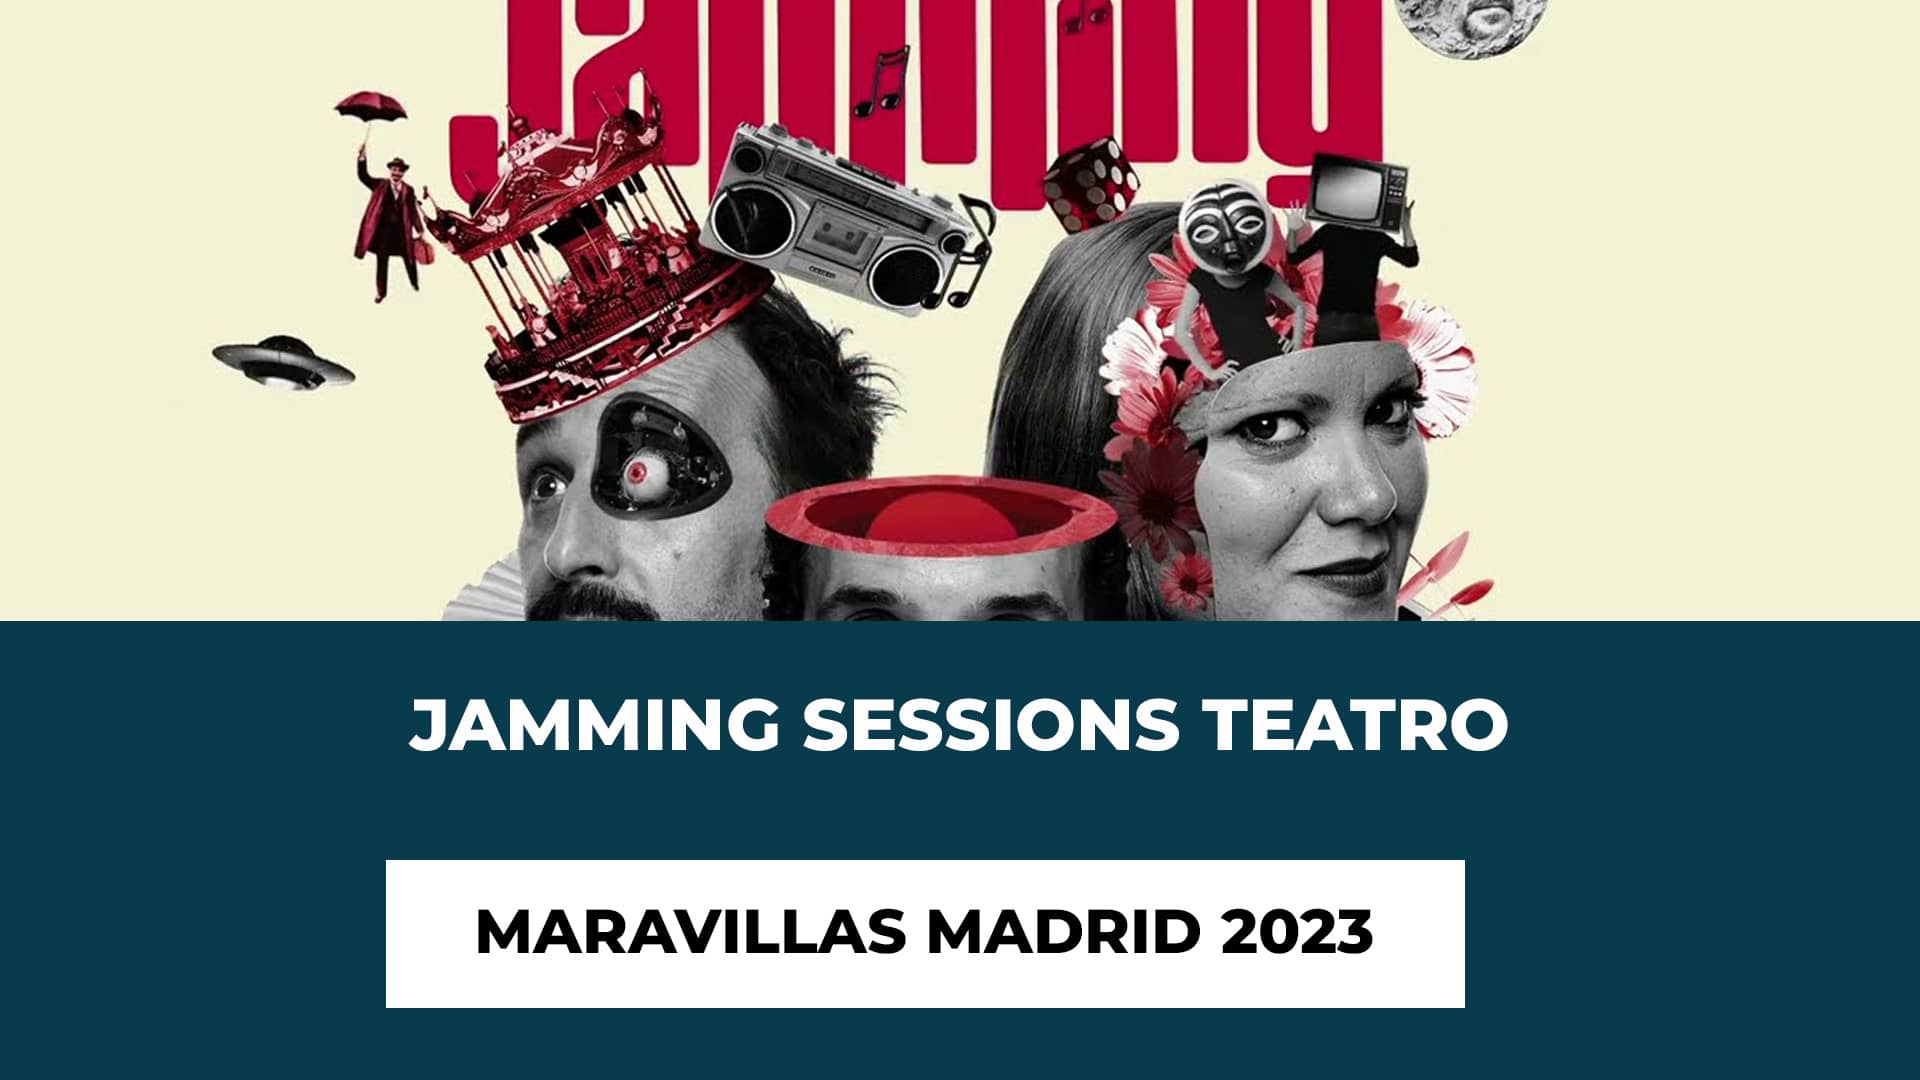 Jamming Sessions Teatro Maravillas Madrid 2023 - Nuevos shows de Jamming - Cada sesión, es única! - Horarios de las sesiones